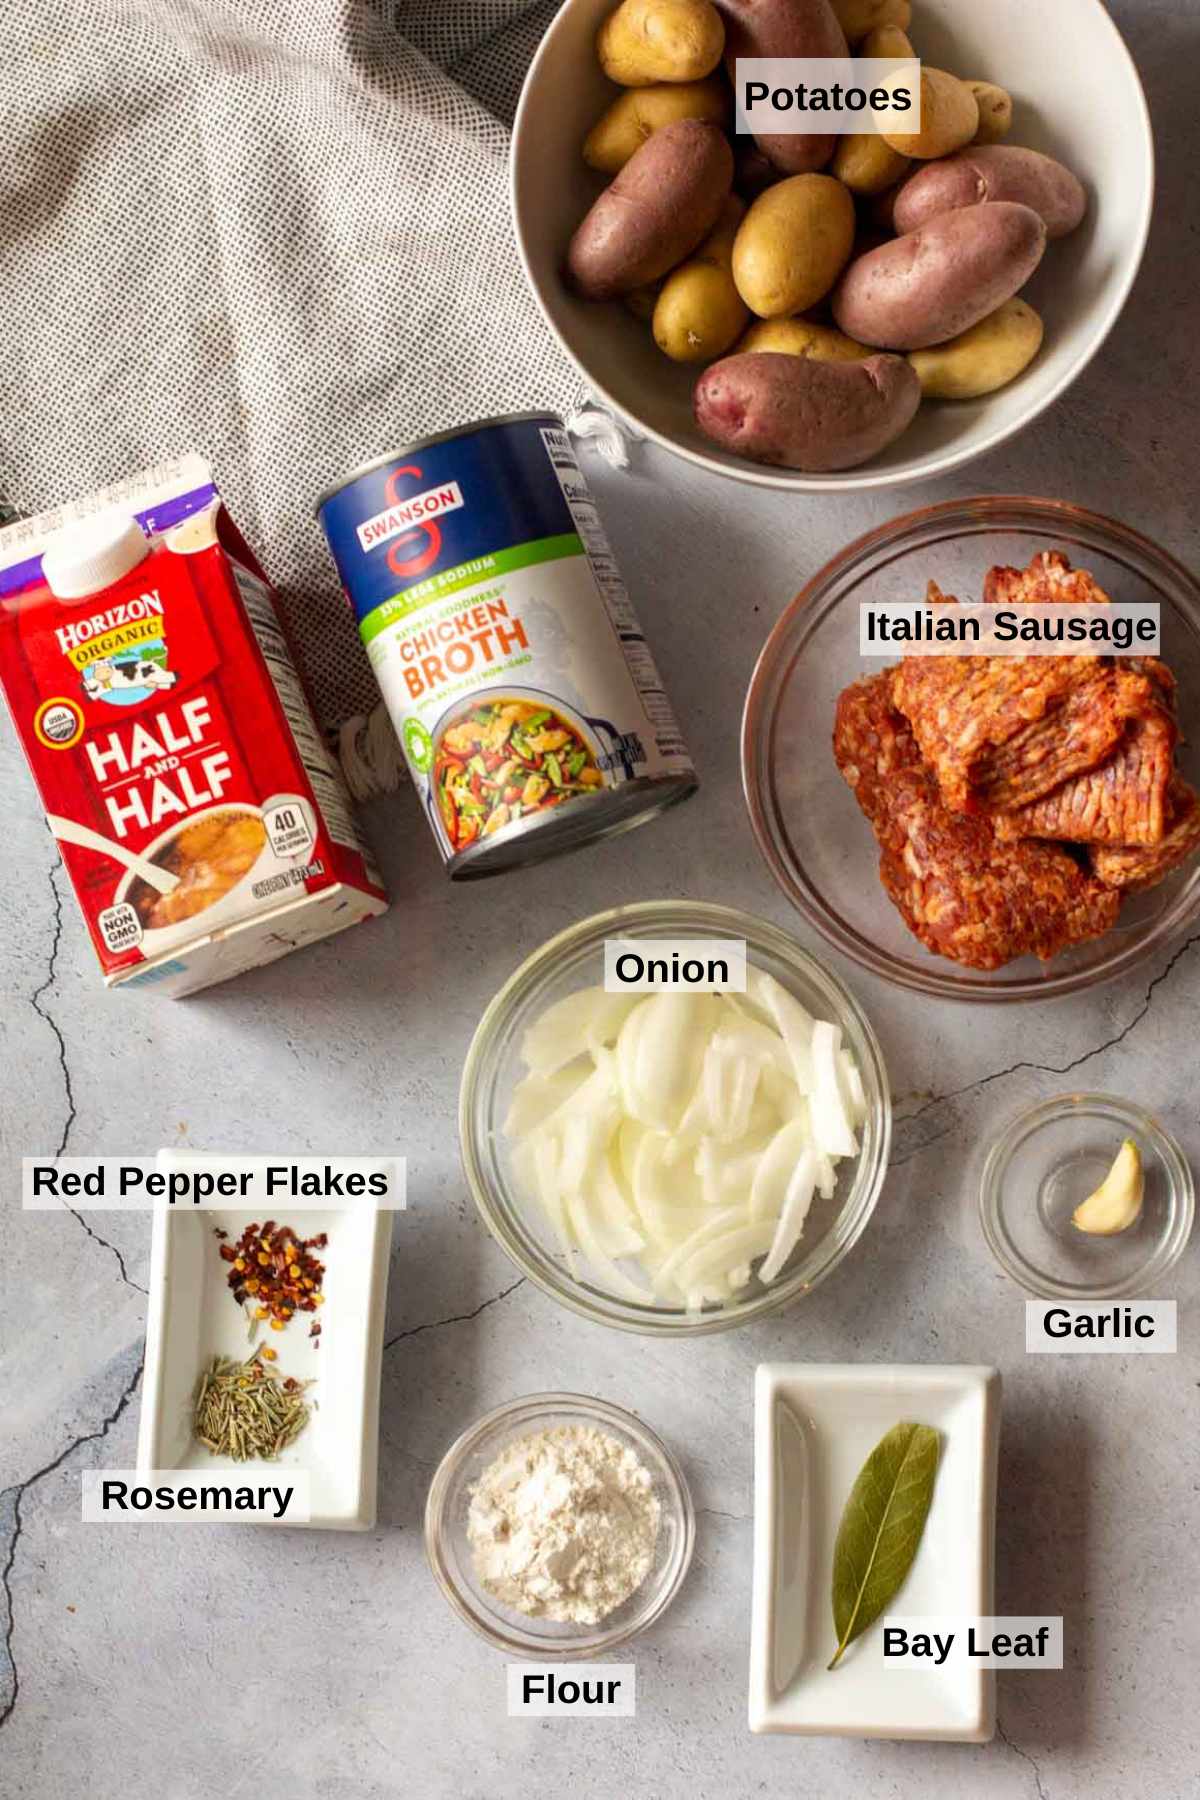 Ingredients to make sausage potato soup.